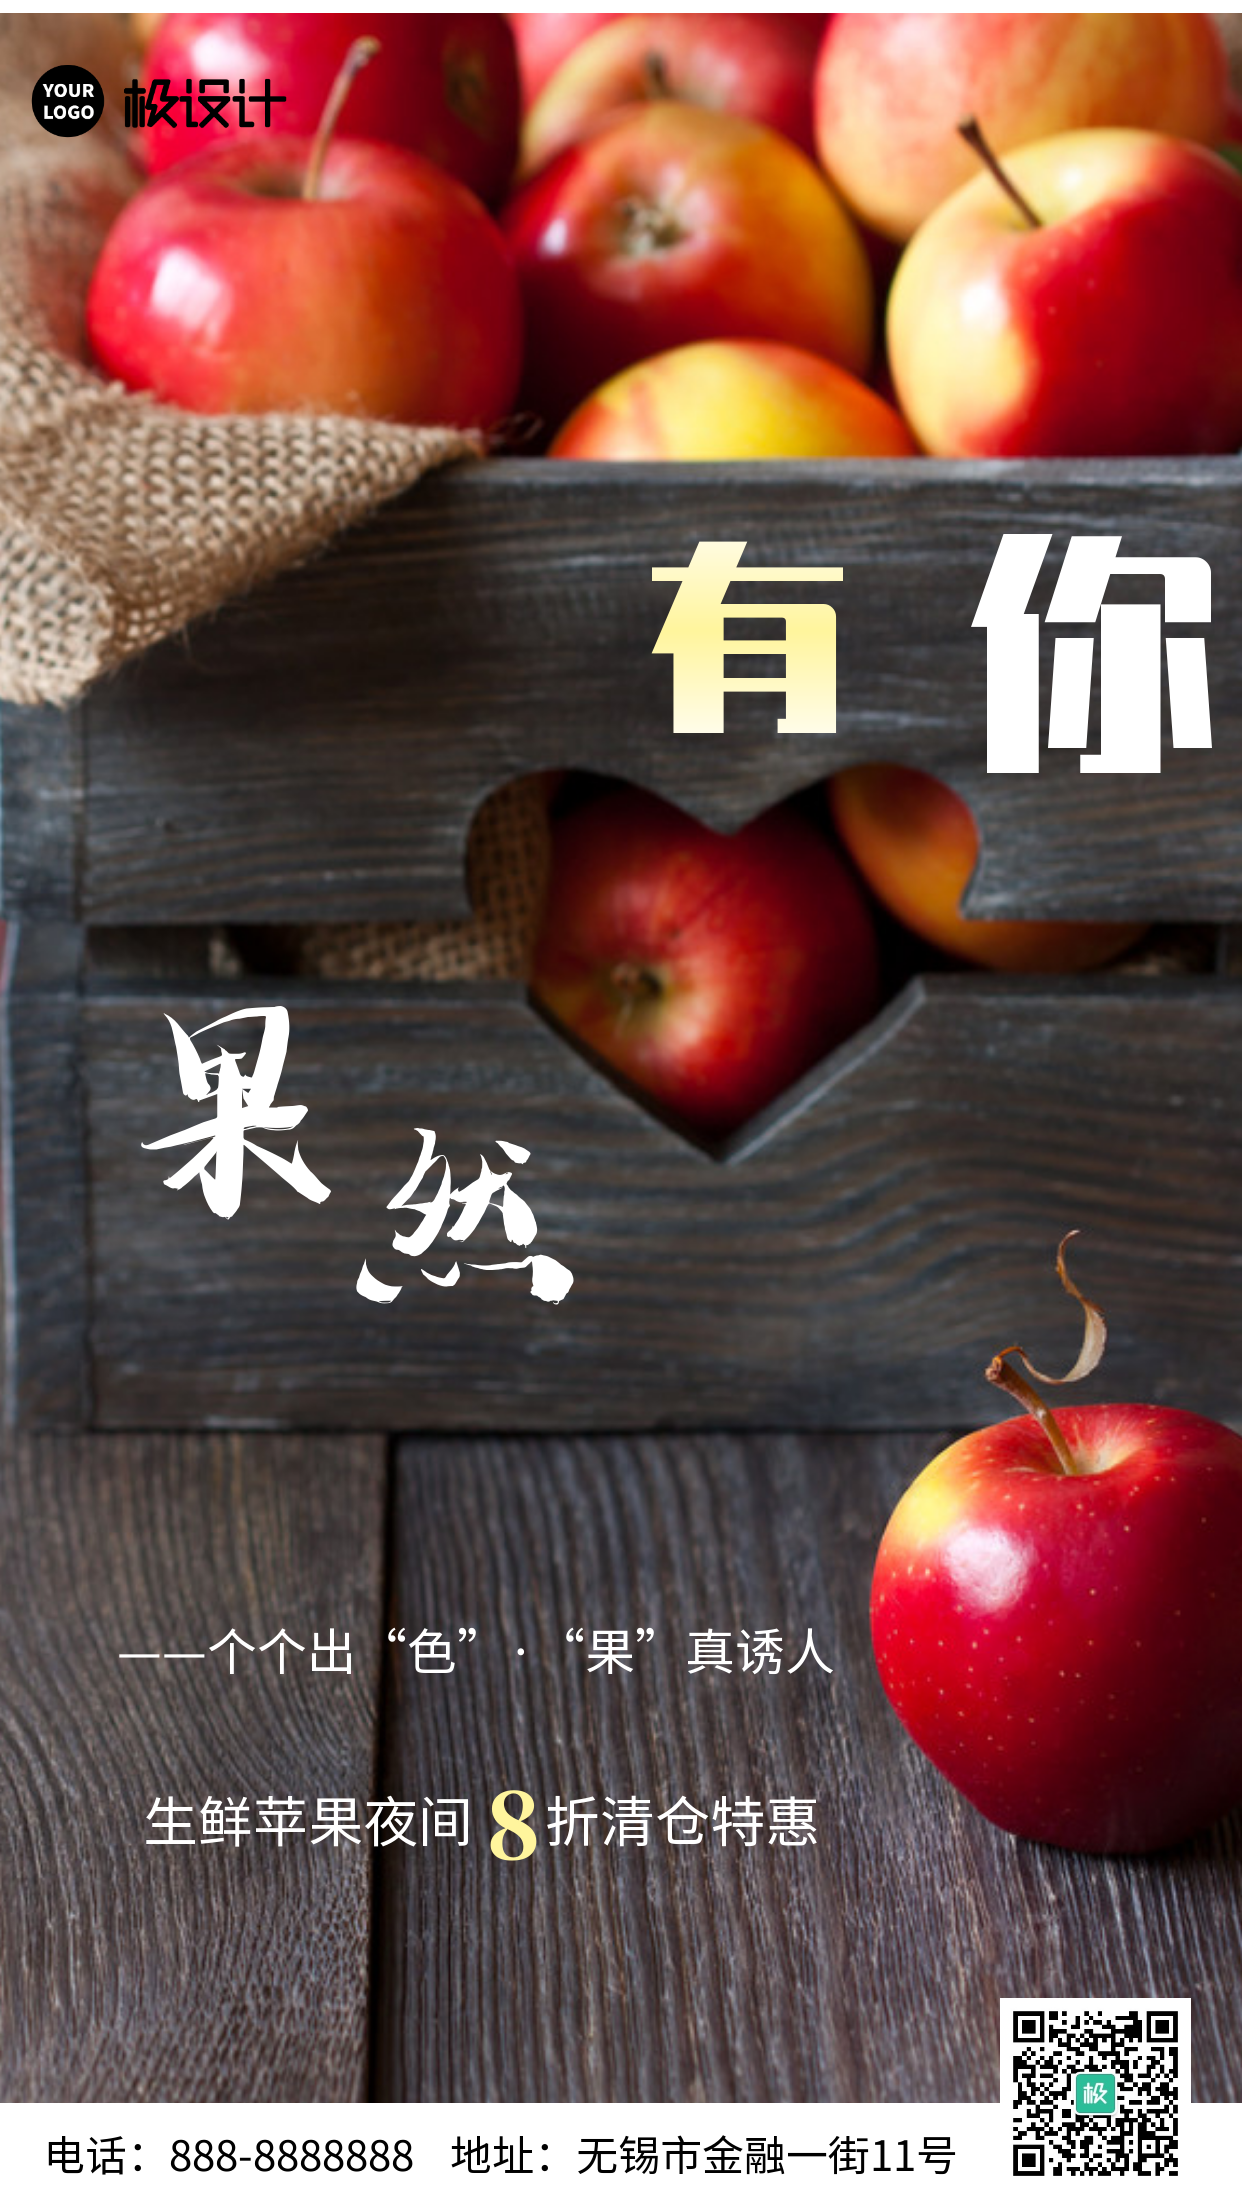 生鲜打折夜间苹果清仓简约手机海报